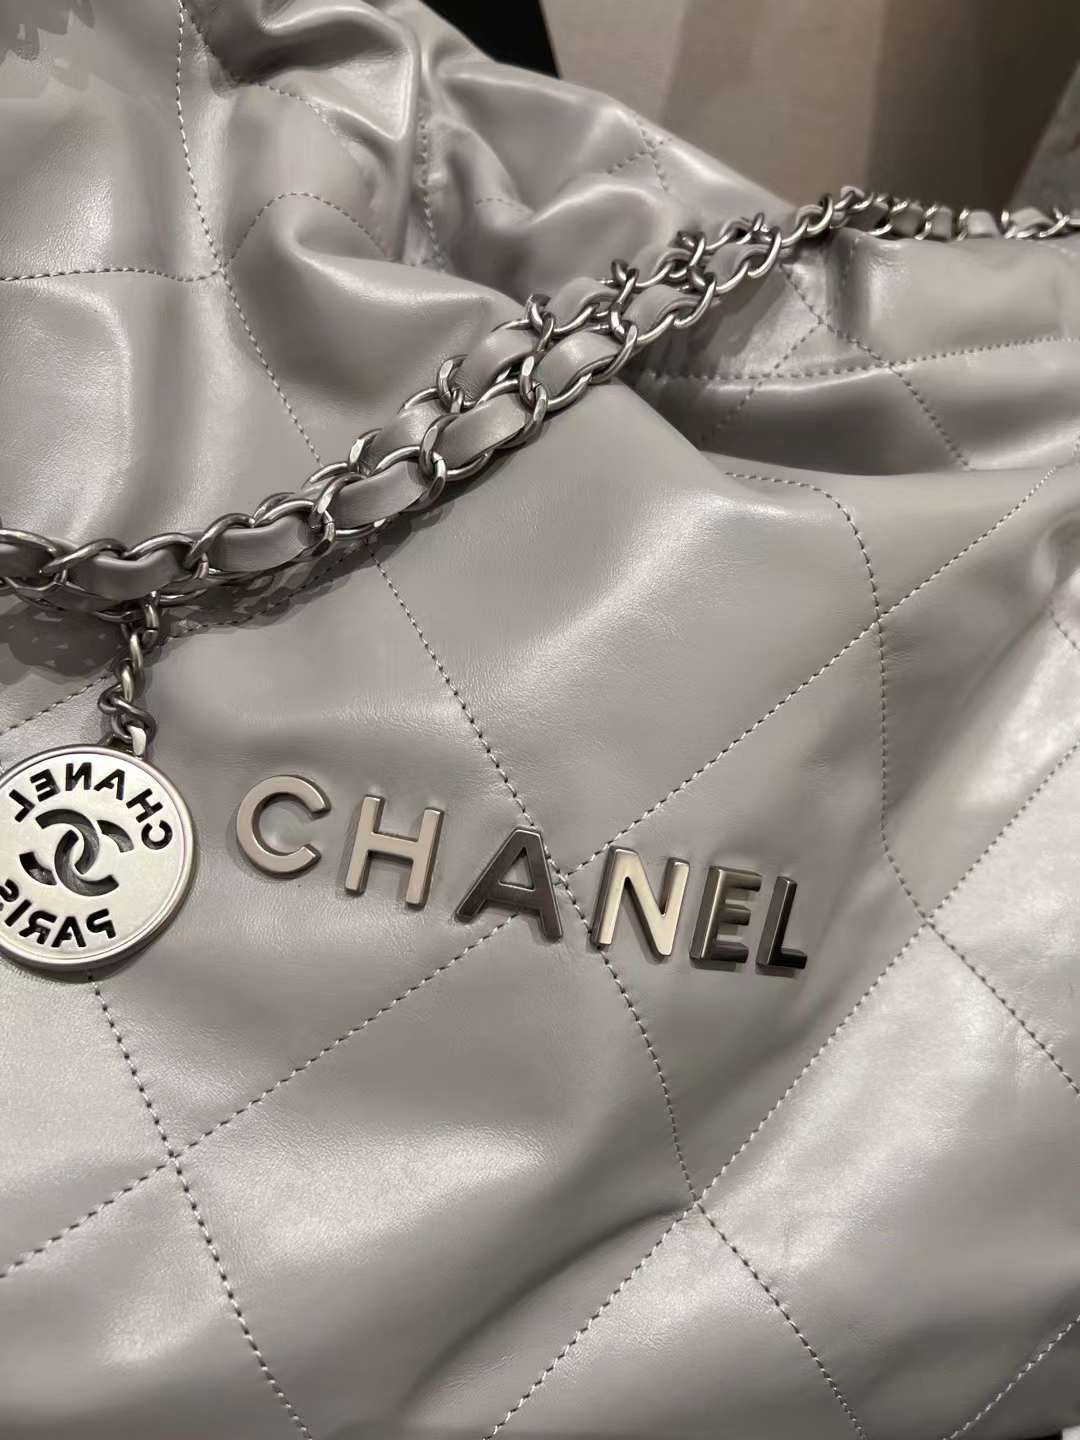 【P2220】香奈儿2022年新款包包 Chanel银灰色菱格纹光面皮革22 bag单肩包